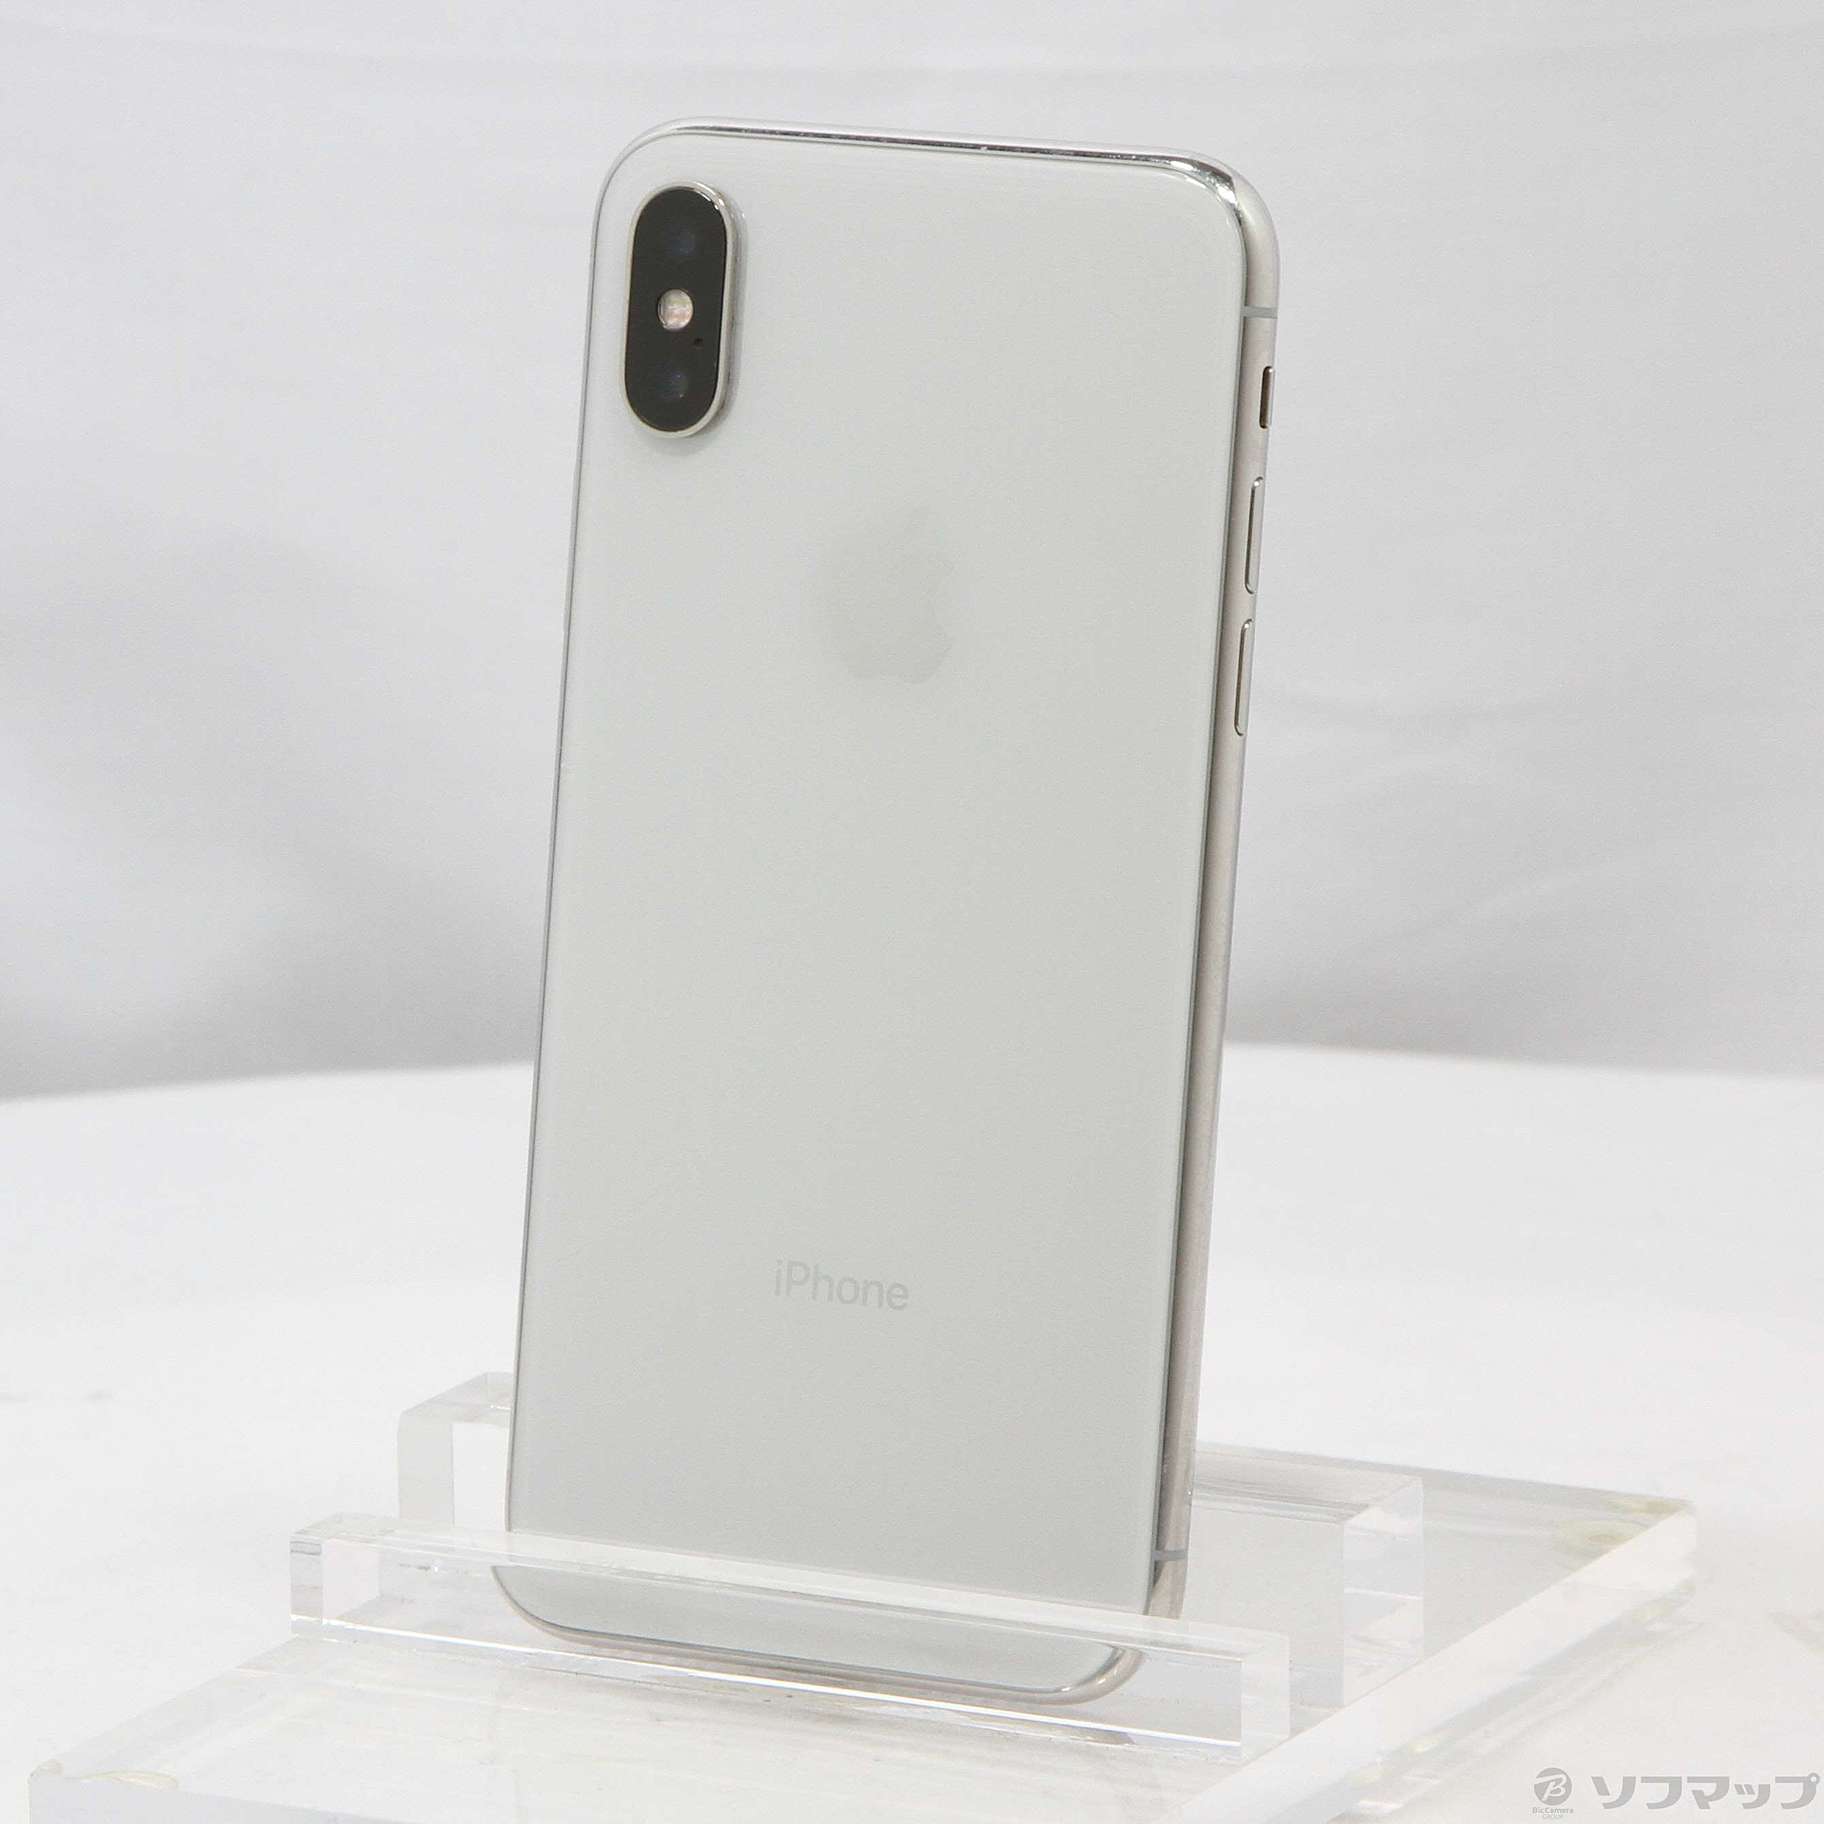 iPhone X 256GB Silver 海外SIMフリー